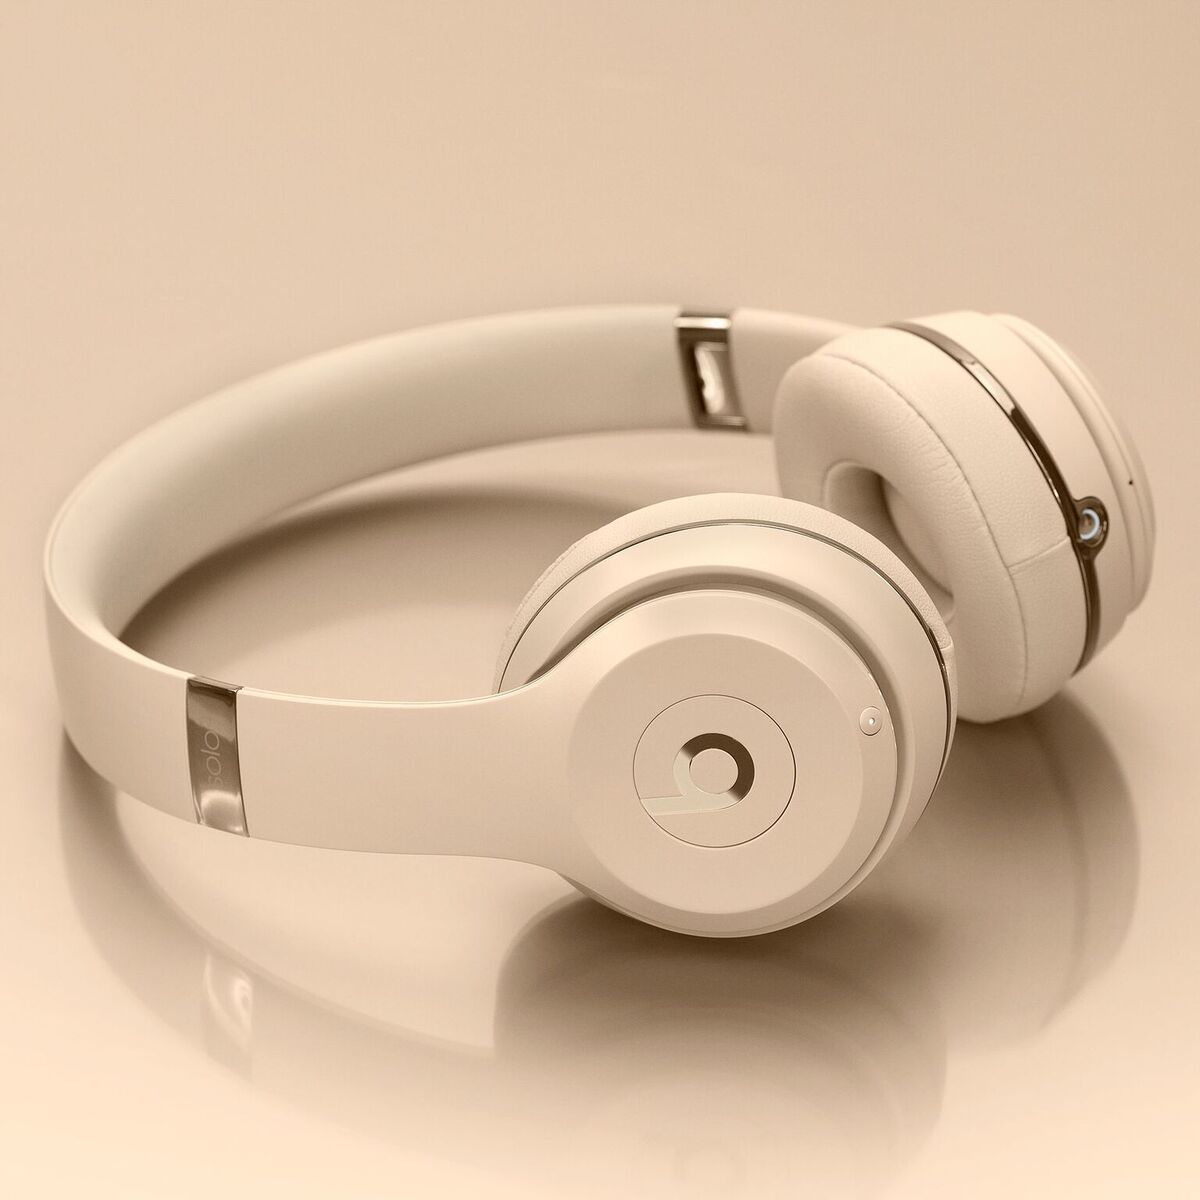 Beats image003 Keynote Apple : Beats suit également avec une nouvelle collection Apple